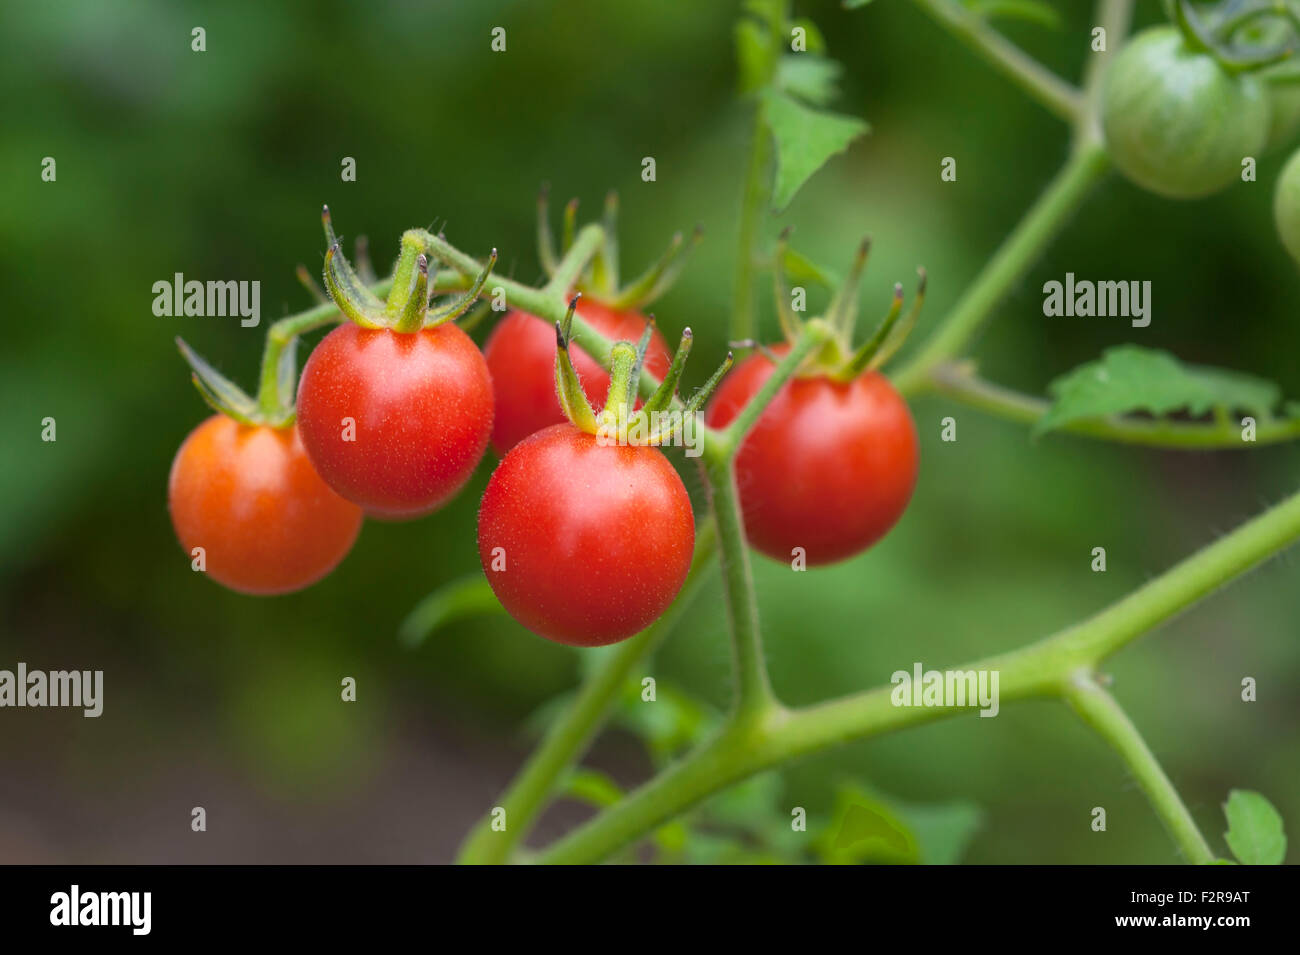 Cerise mûre tomates (Lycopersicon esculentum var. Cerasiforme) sur le plant de tomate, Allemagne Banque D'Images